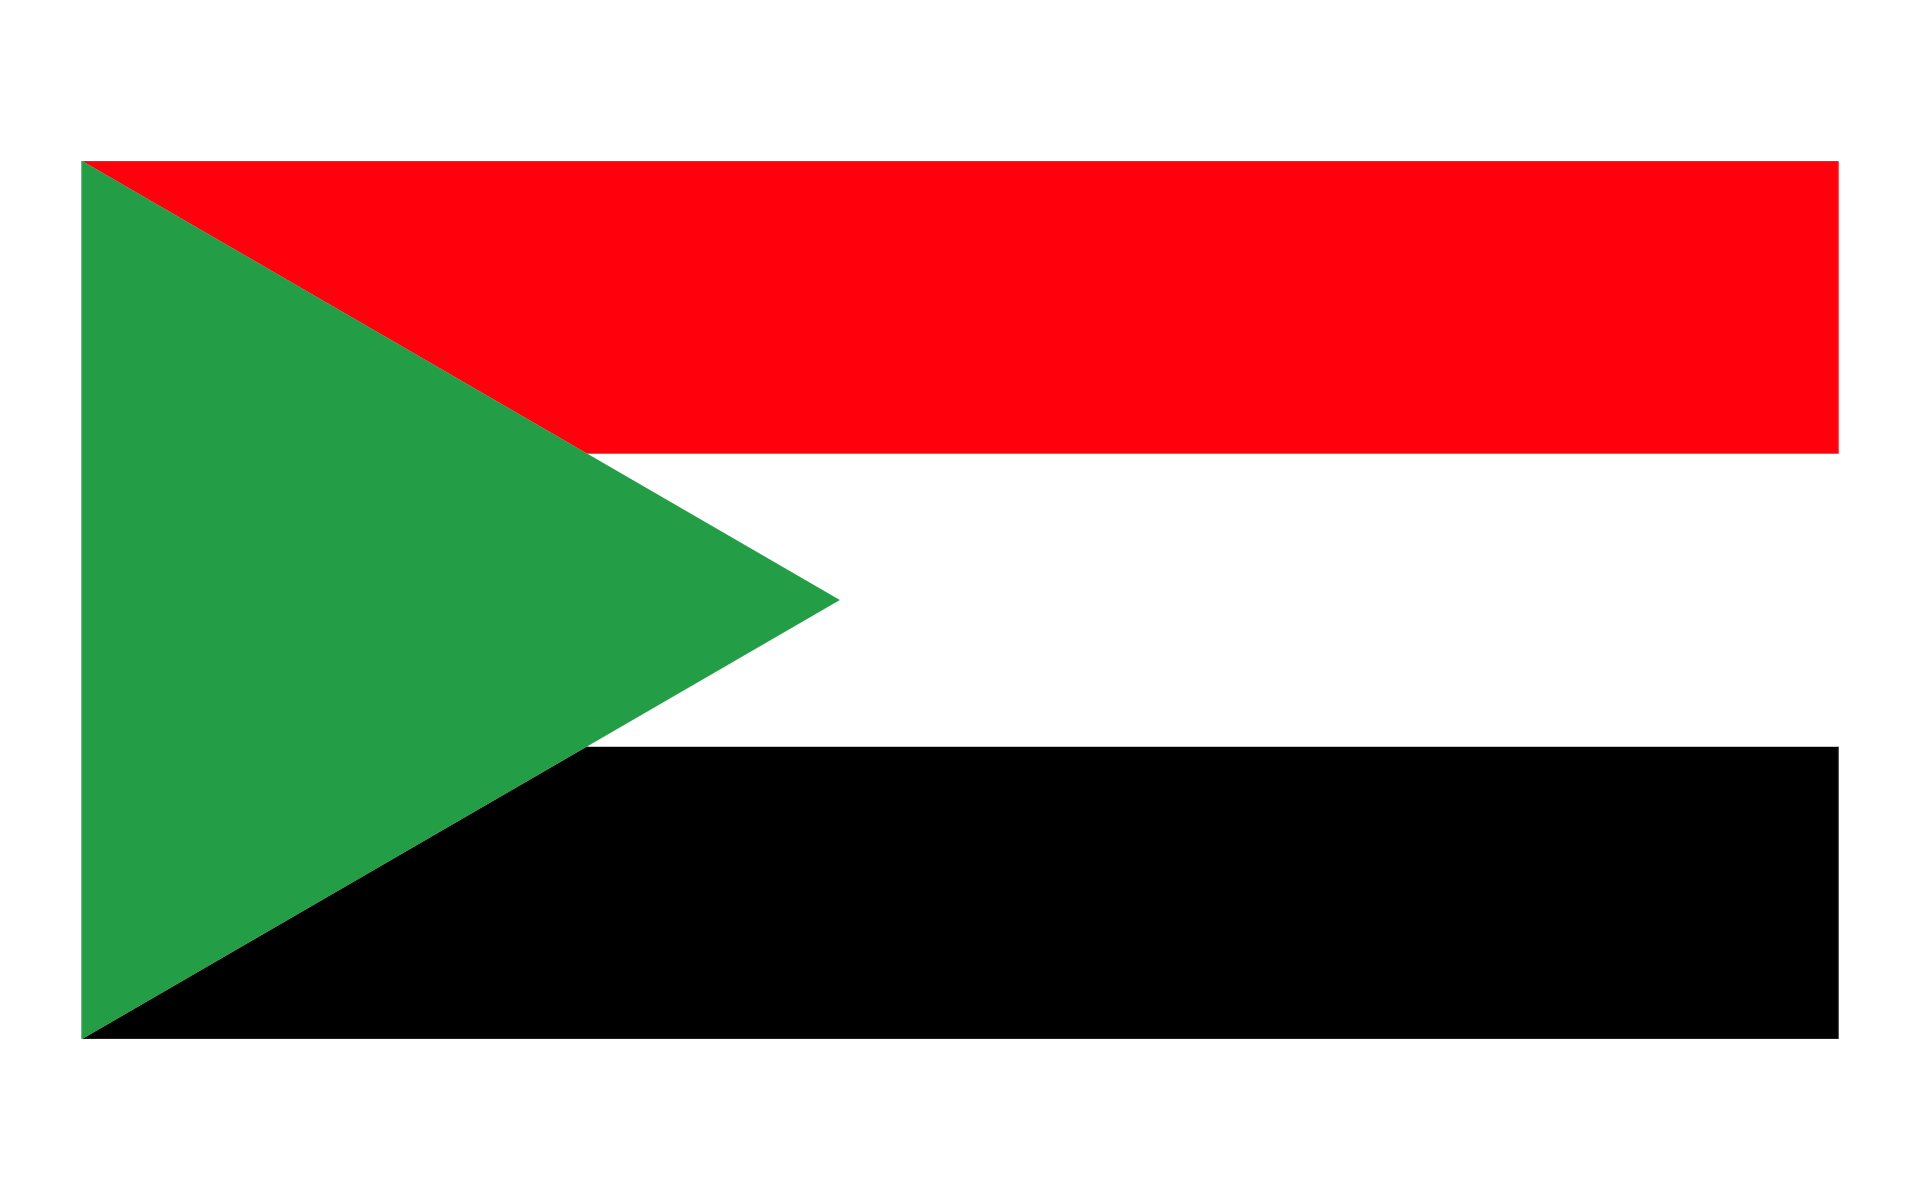 蘇丹國旗